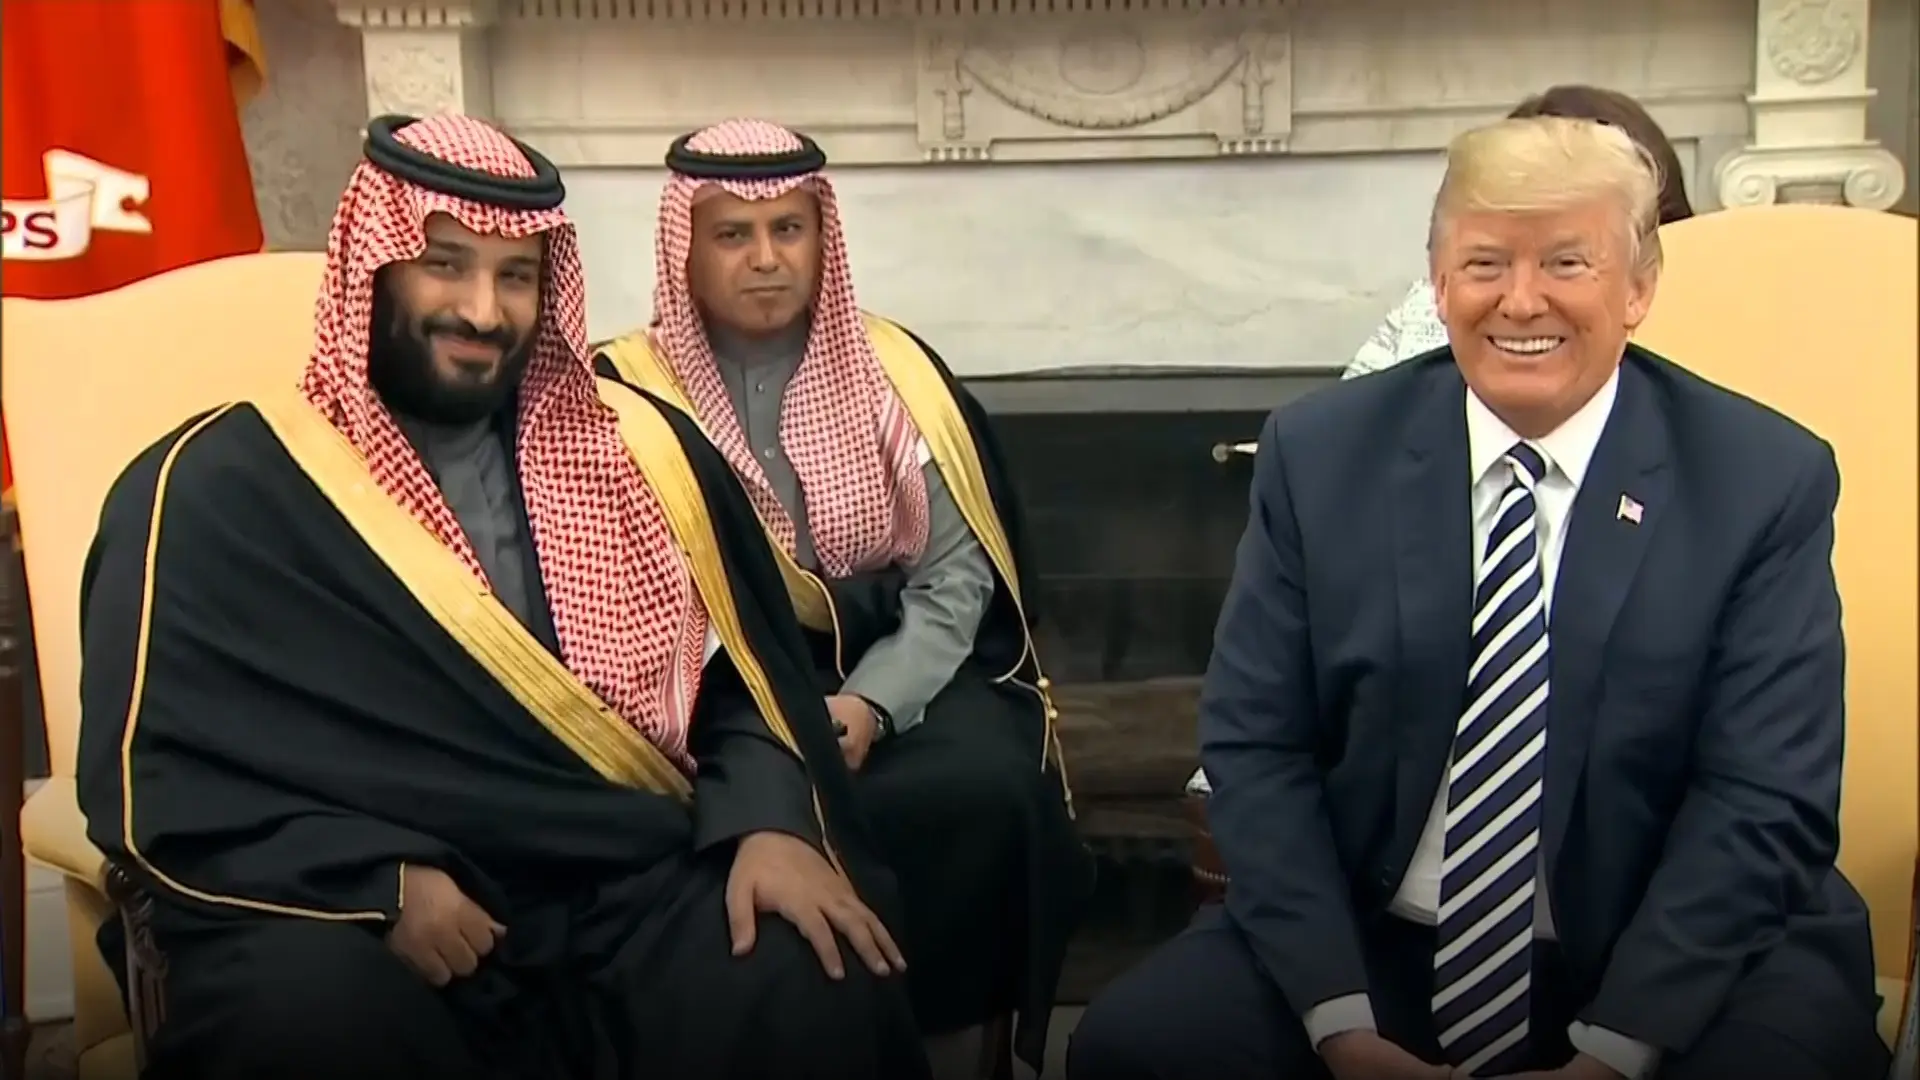 יורש העצר הסעודי בפגישתו עם נשיא ארה"ב: "מחויבים להיפטר מאיומים העומדים בפנינו"